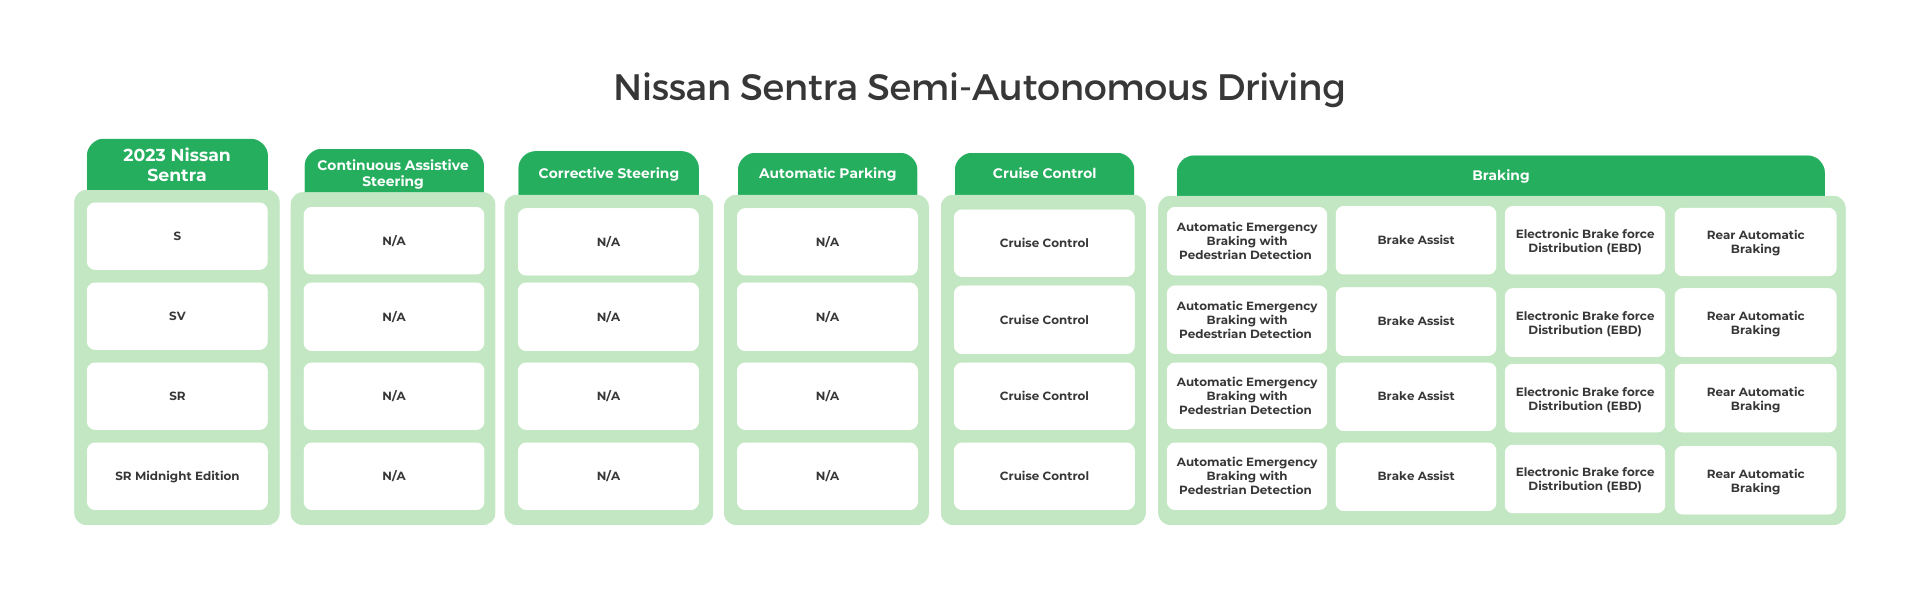 2023 Nissan Sentra Semi-Autonomous Driving